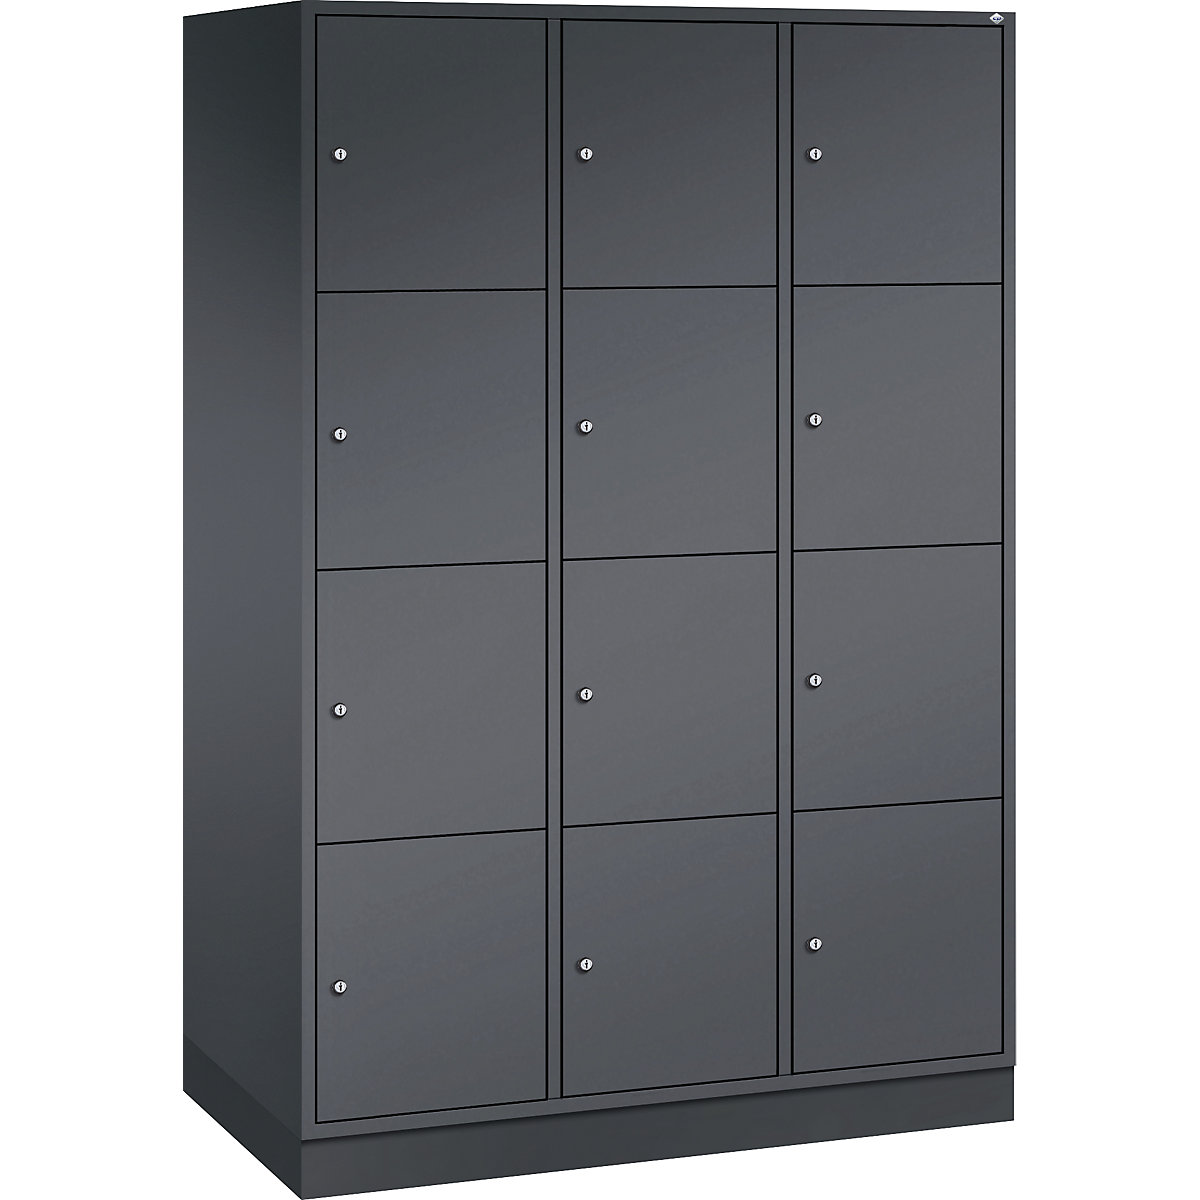 Vestiaire multicases en acier INTRO, casiers hauteur 435 mm – C+P, l x p 1220 x 600 mm, 12 casiers, corps gris noir, portes gris noir-11